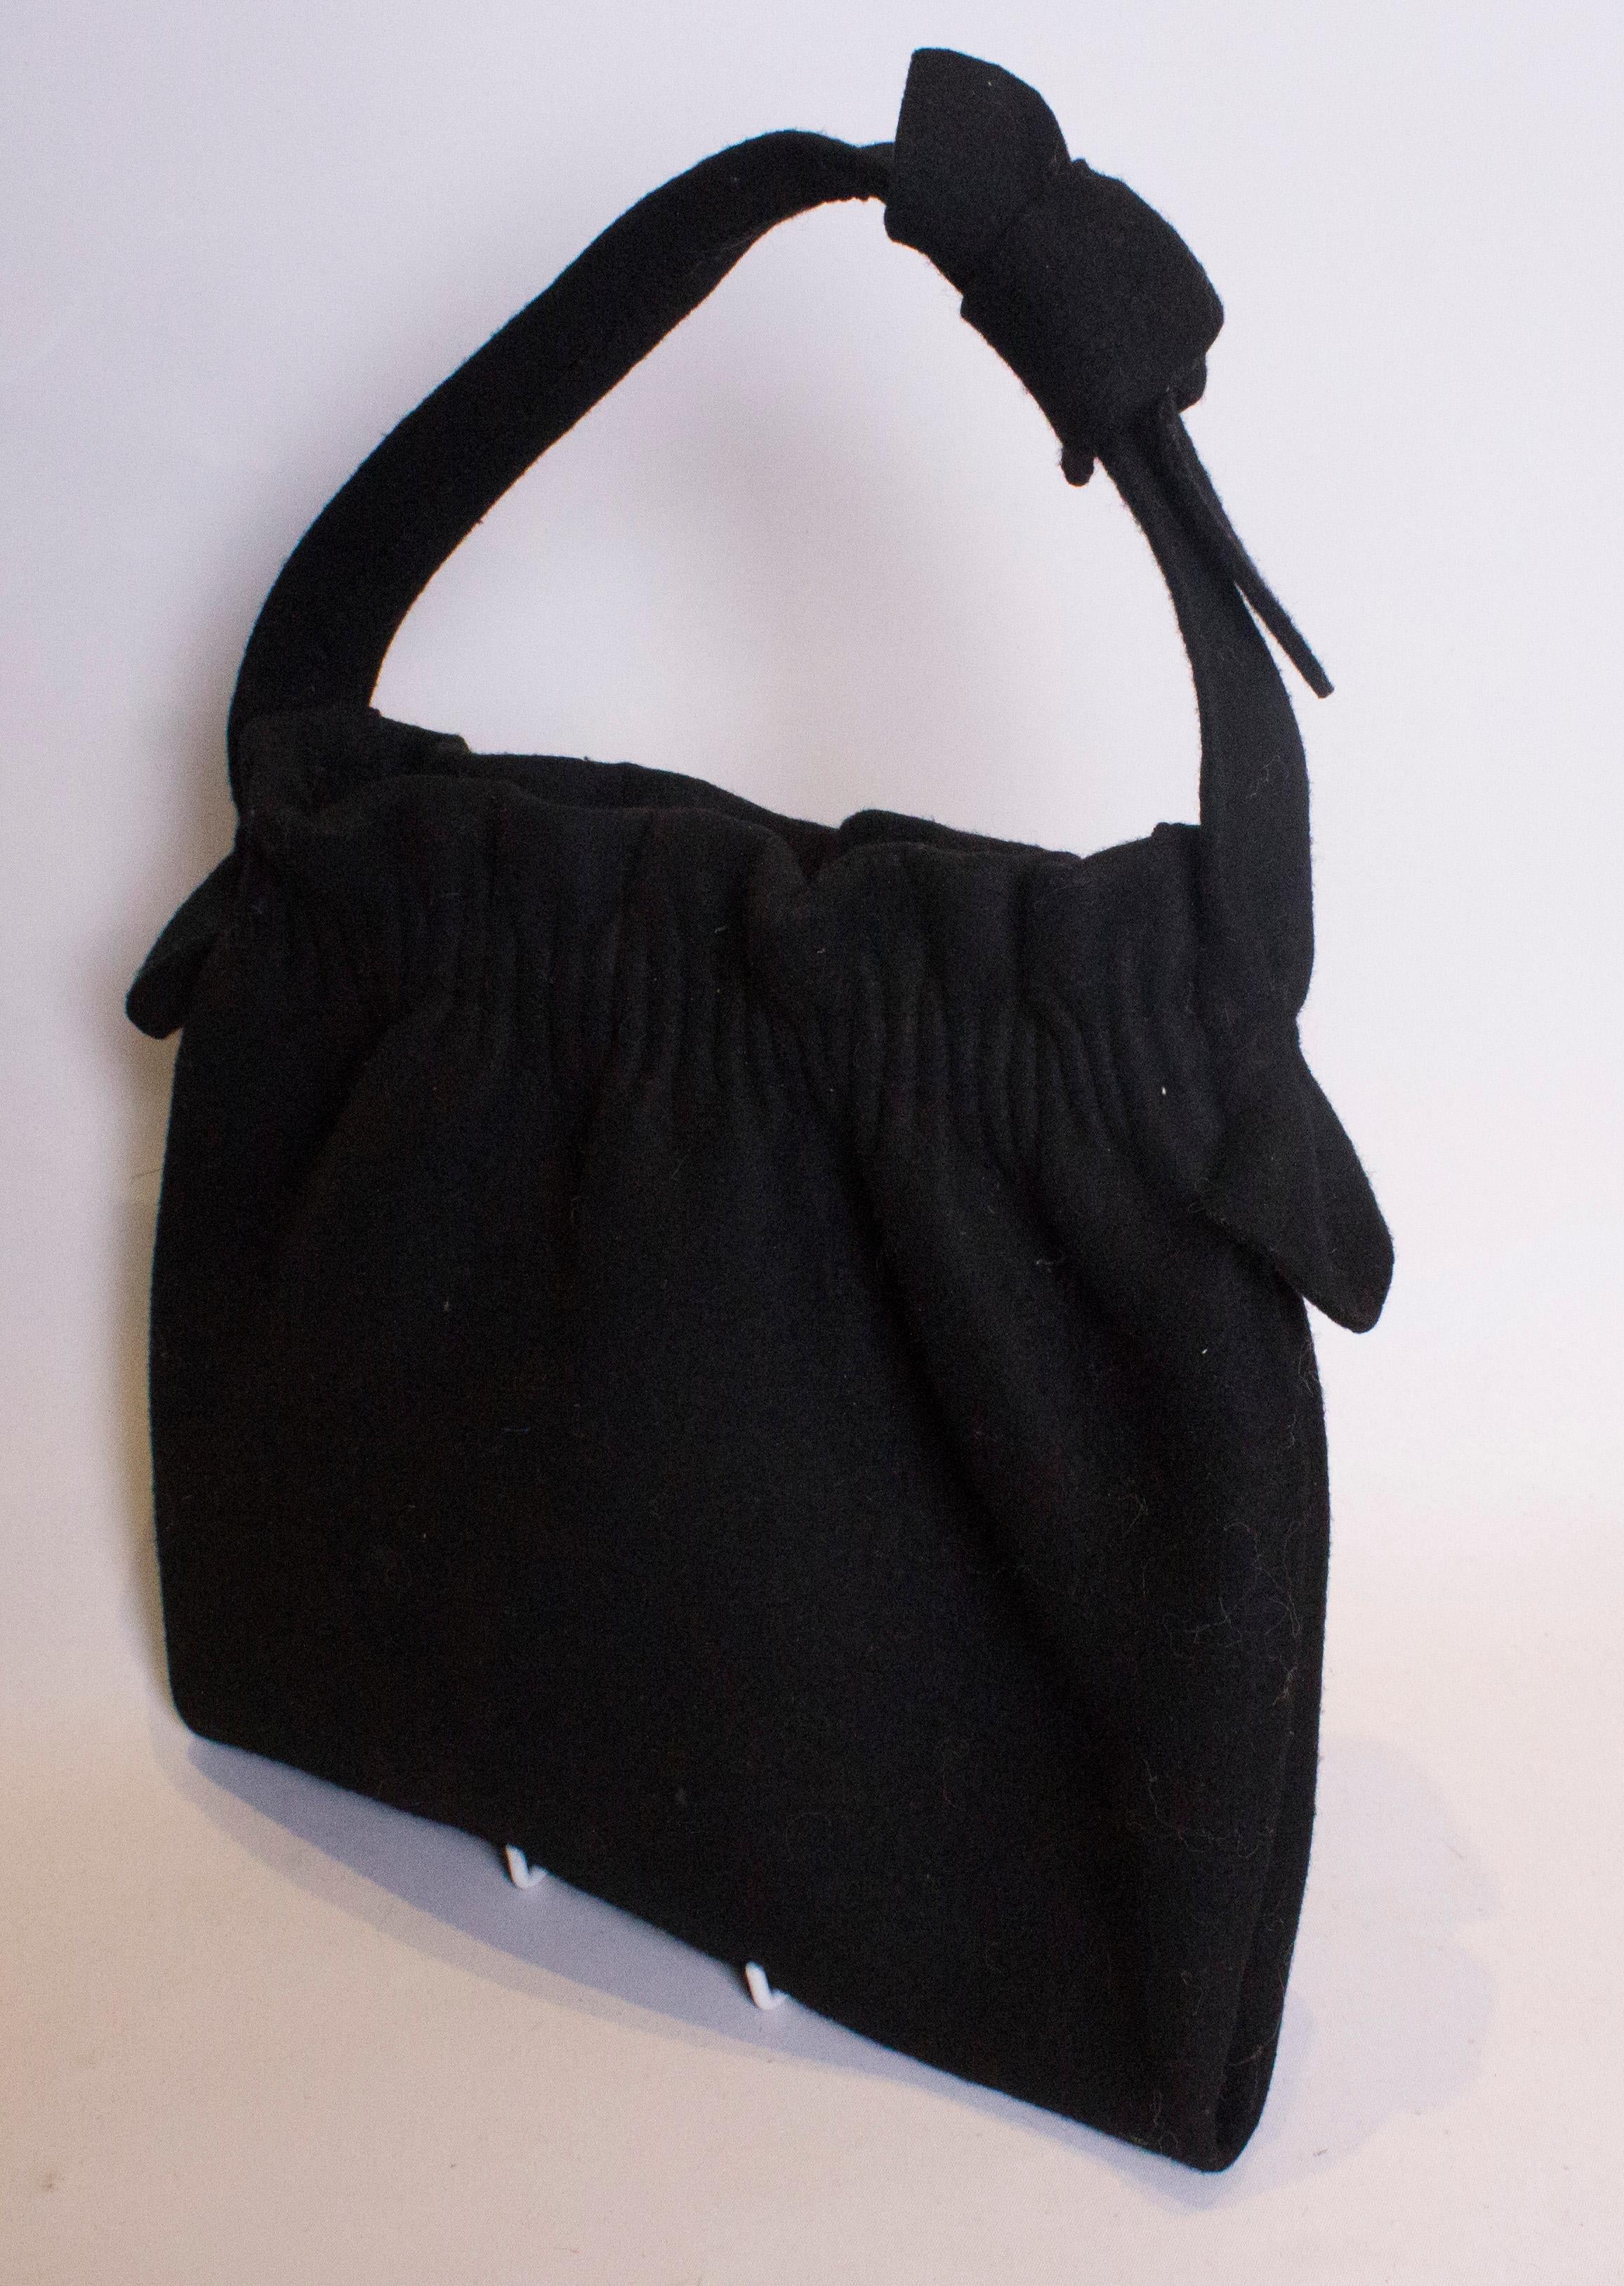 Eine schwarze Filztasche im Vintage-Stil, die groß genug für die wichtigsten Dinge von heute ist. Die Tasche hat eine Raffung an der Oberseite und einen Henkel an der Oberseite.
Maße: Breite 11  1/2'', Höhe 11'' Tiefe 1 1/2''